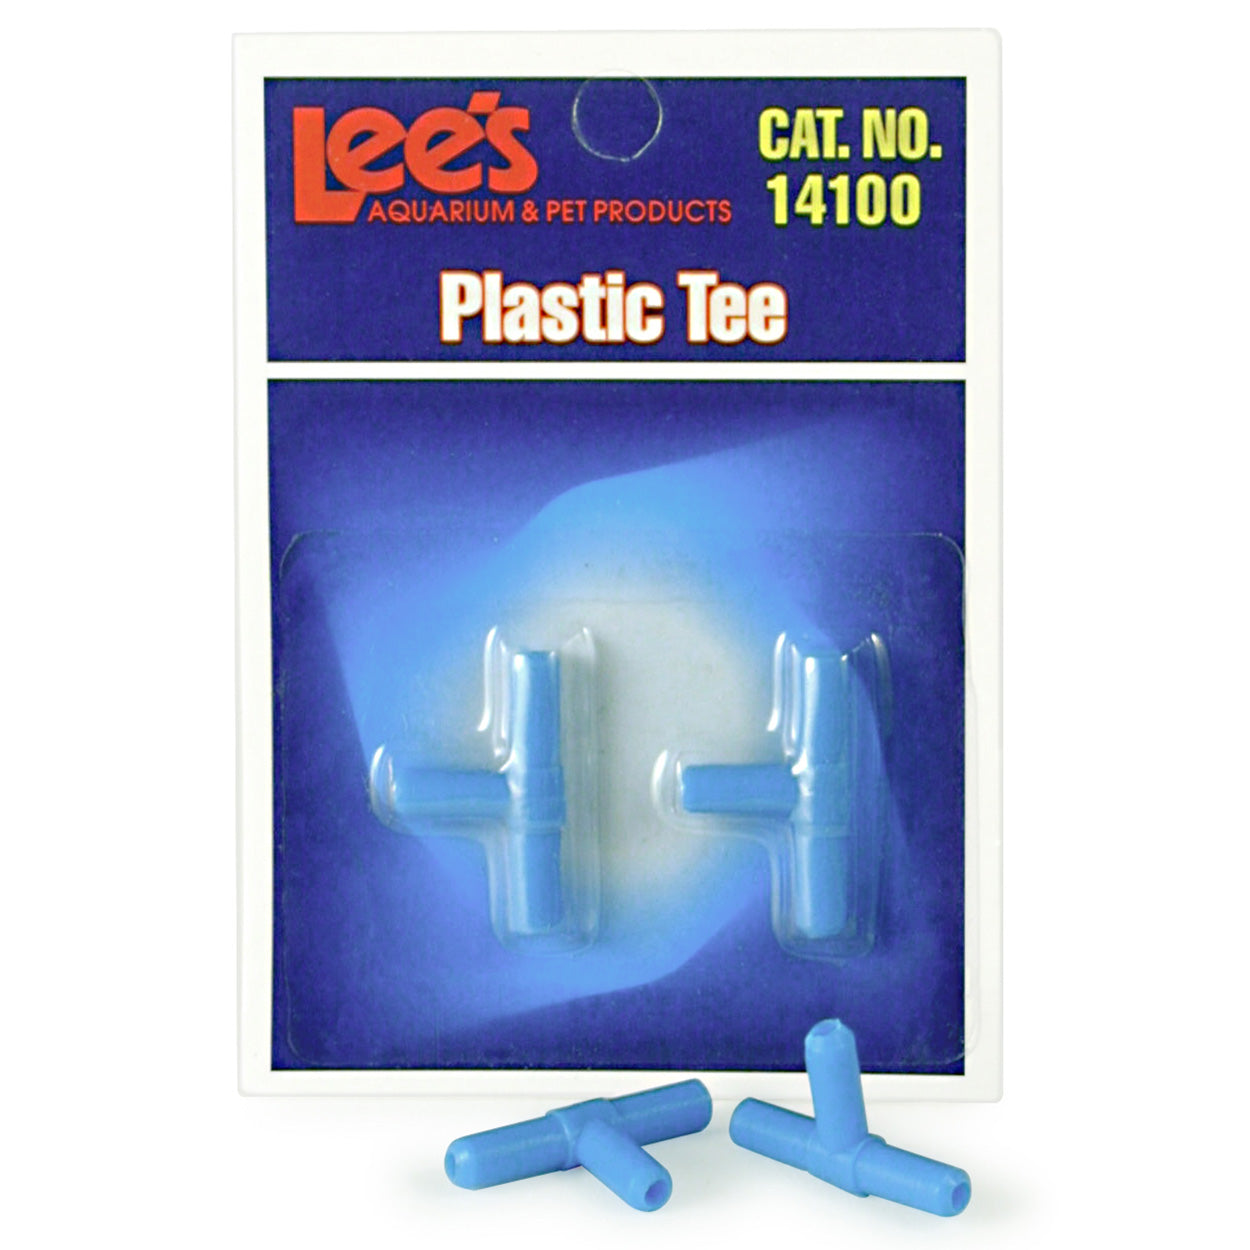 Lee's Plastic Tee - 2 pk